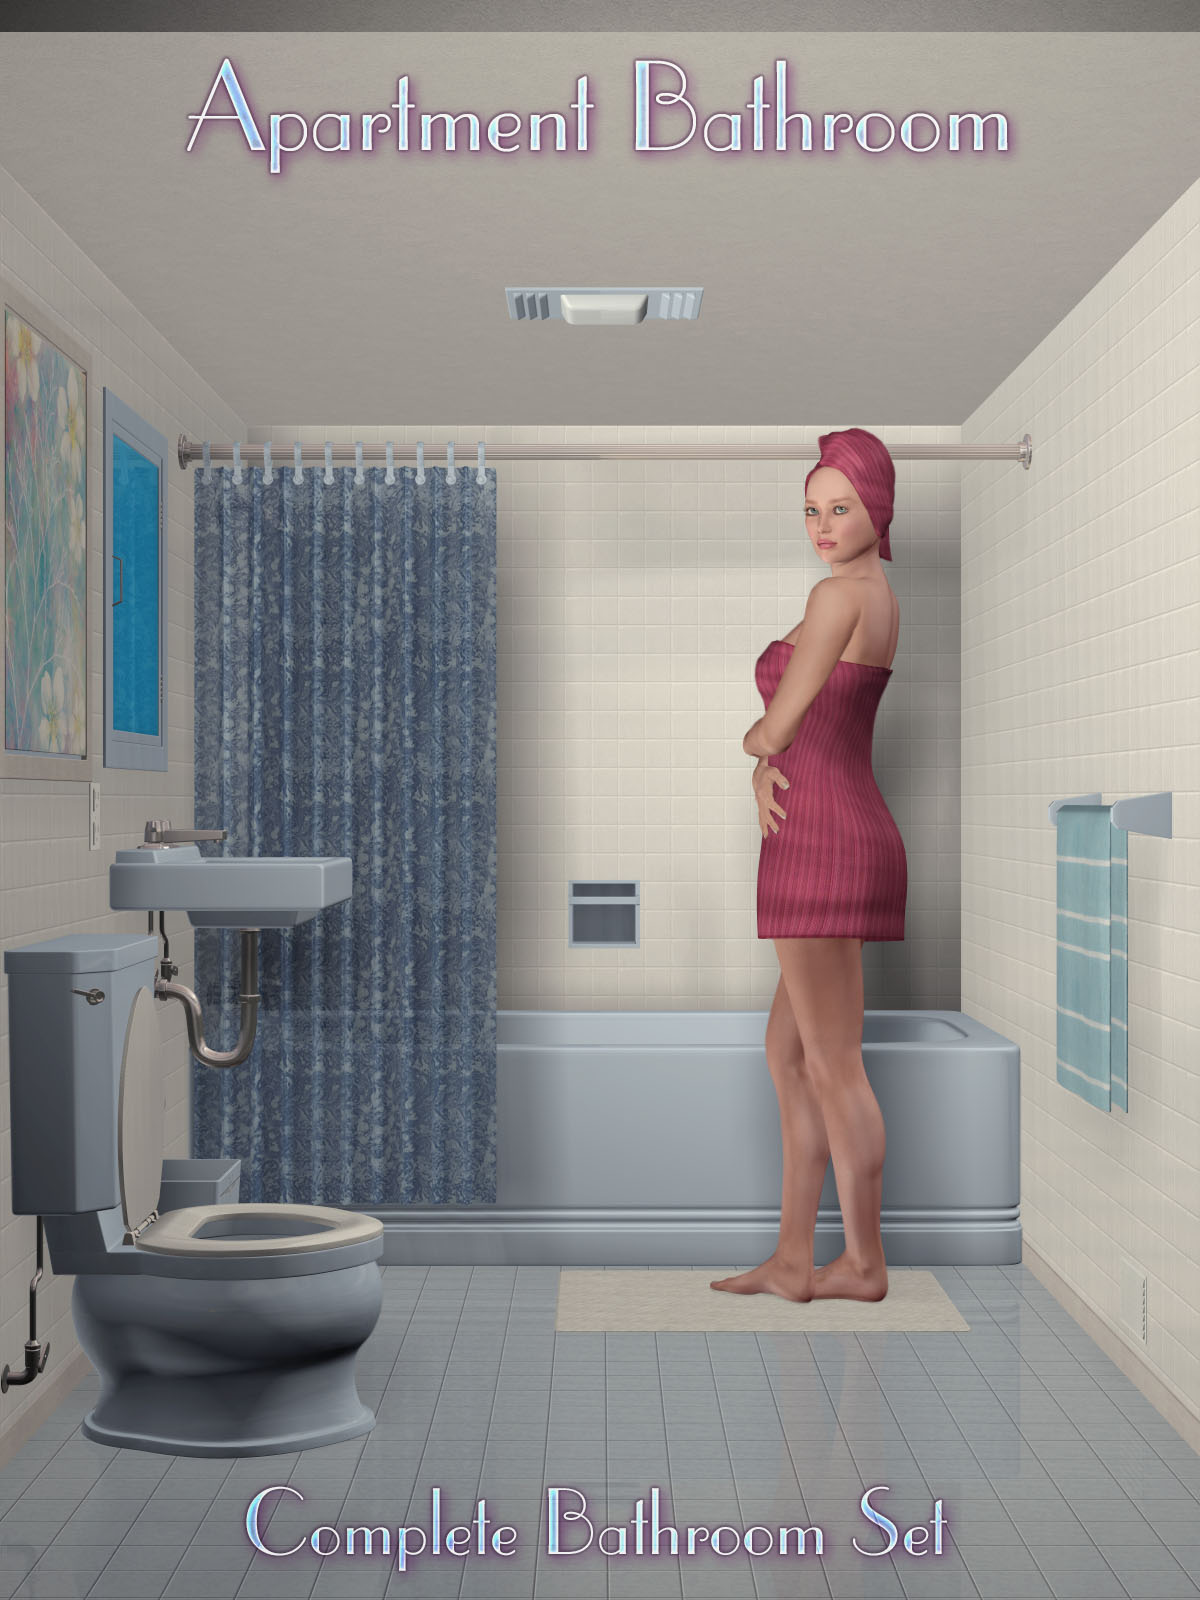 The Apartment Bathroom_DAZ3DDL